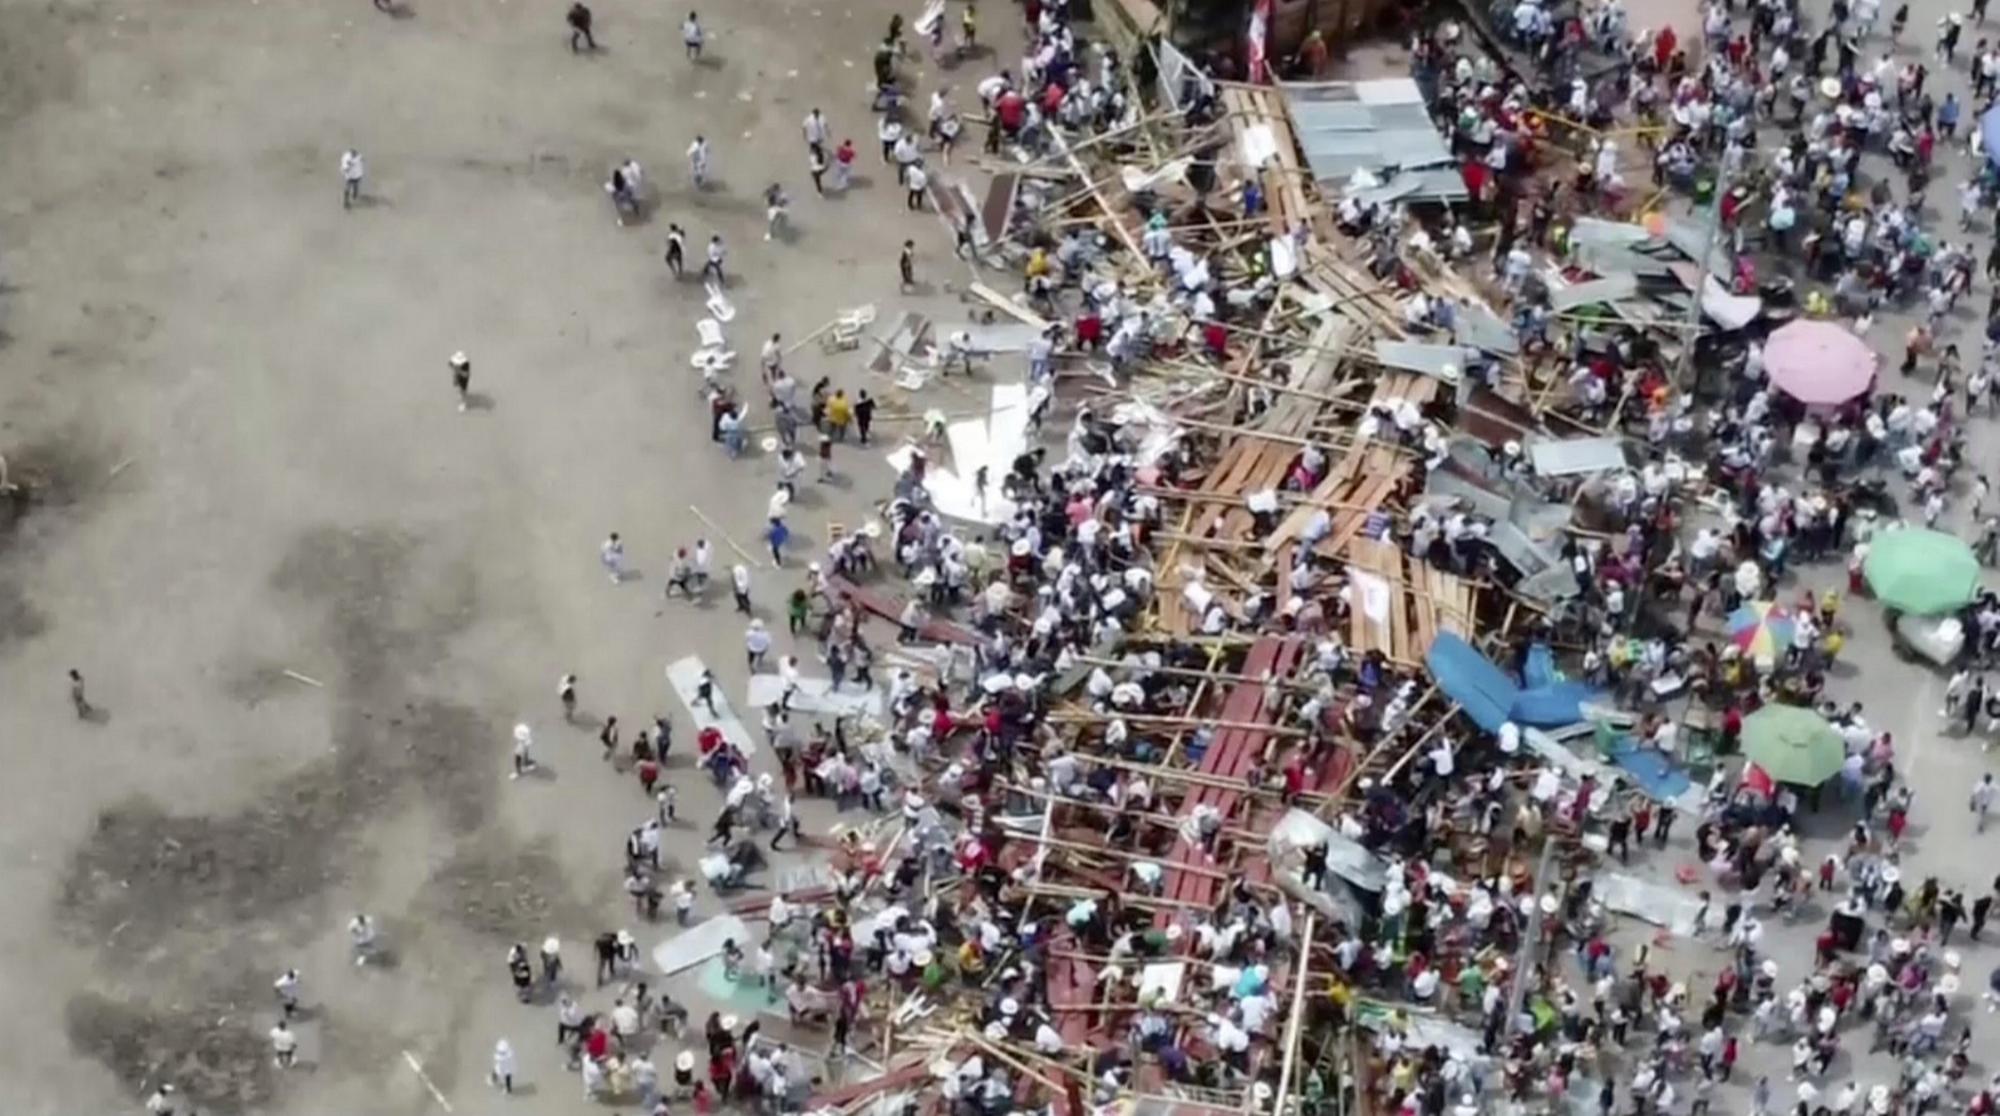 Najmenej štyria ľudia zahynuli v nedeľu v Kolumbii pri zrútení časti tribúny v aréne.